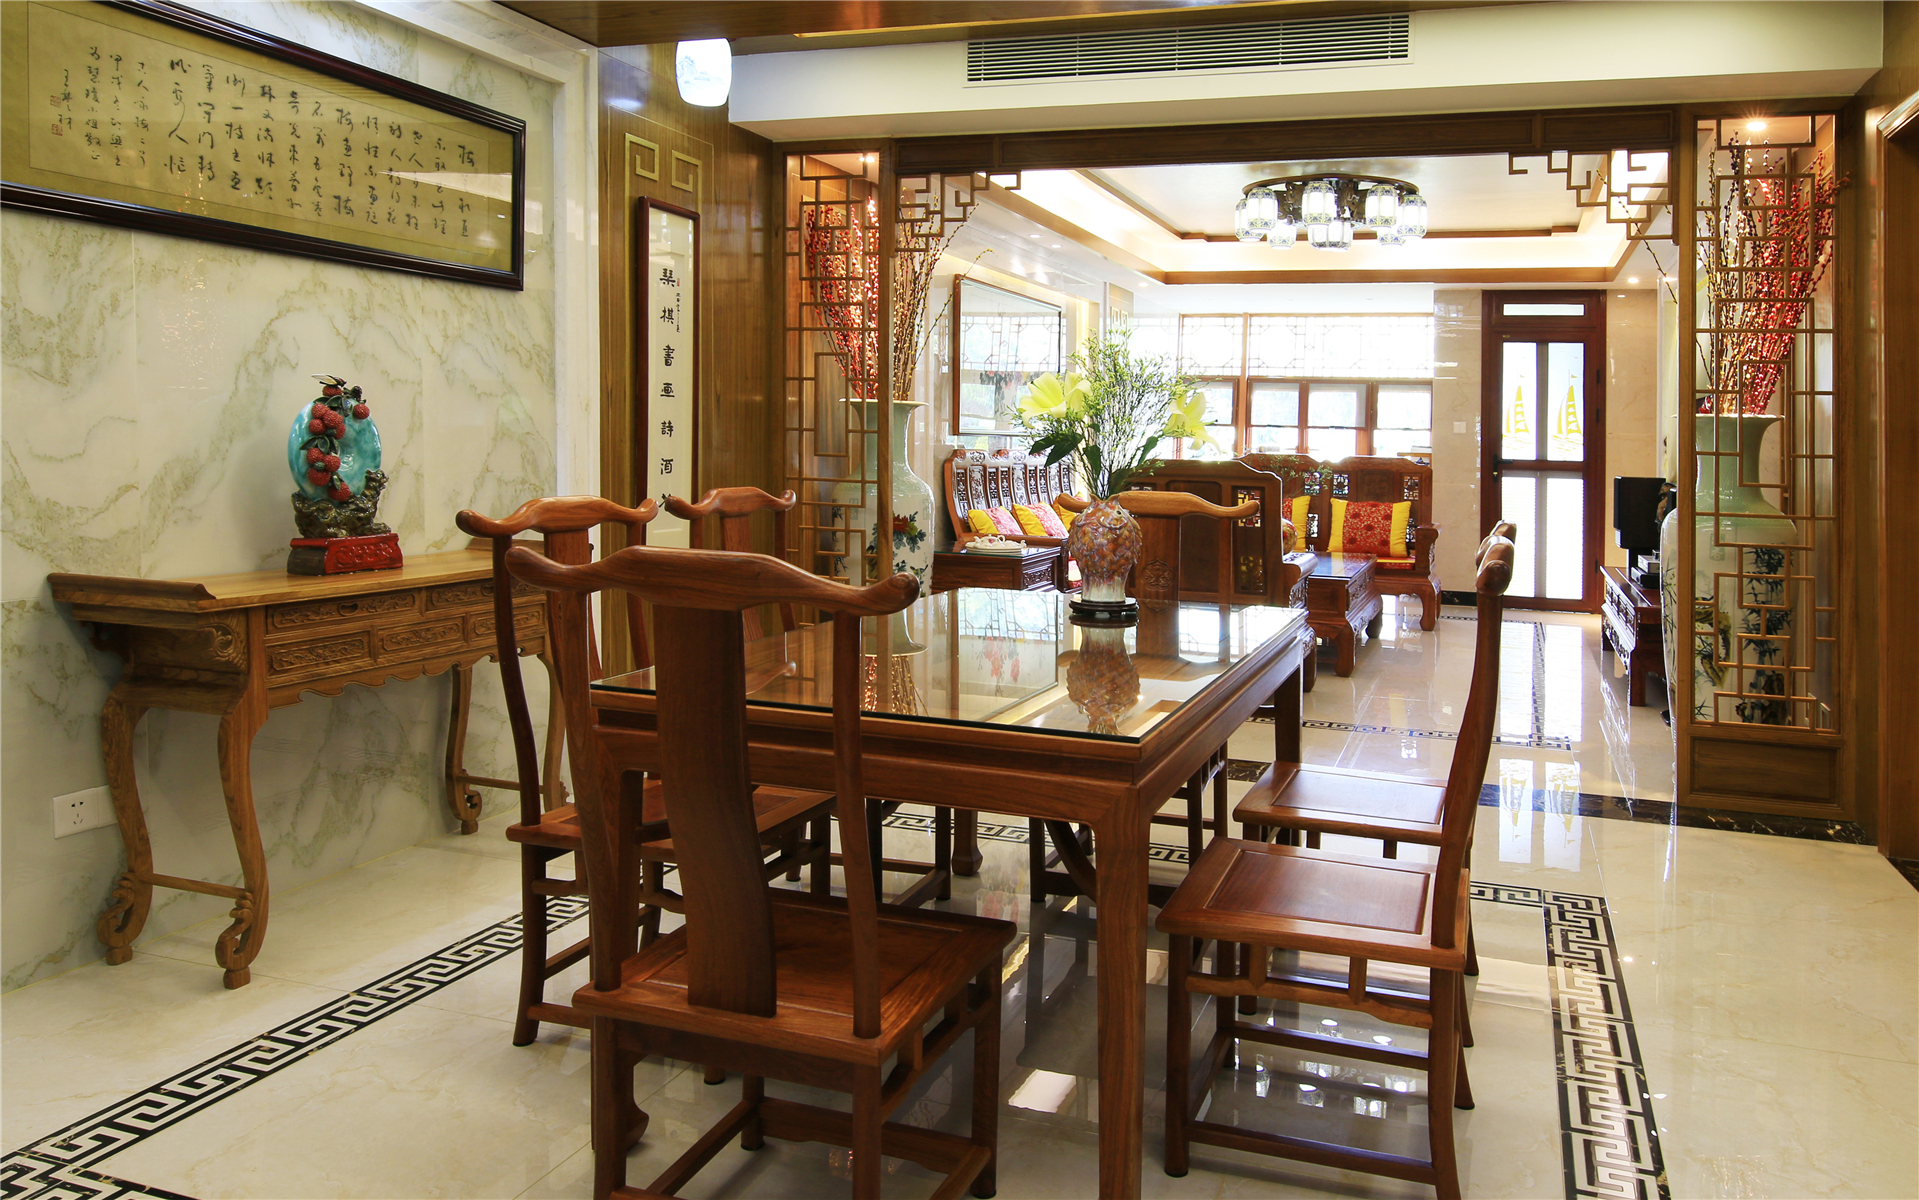 中式风格别墅餐厅装修效果图